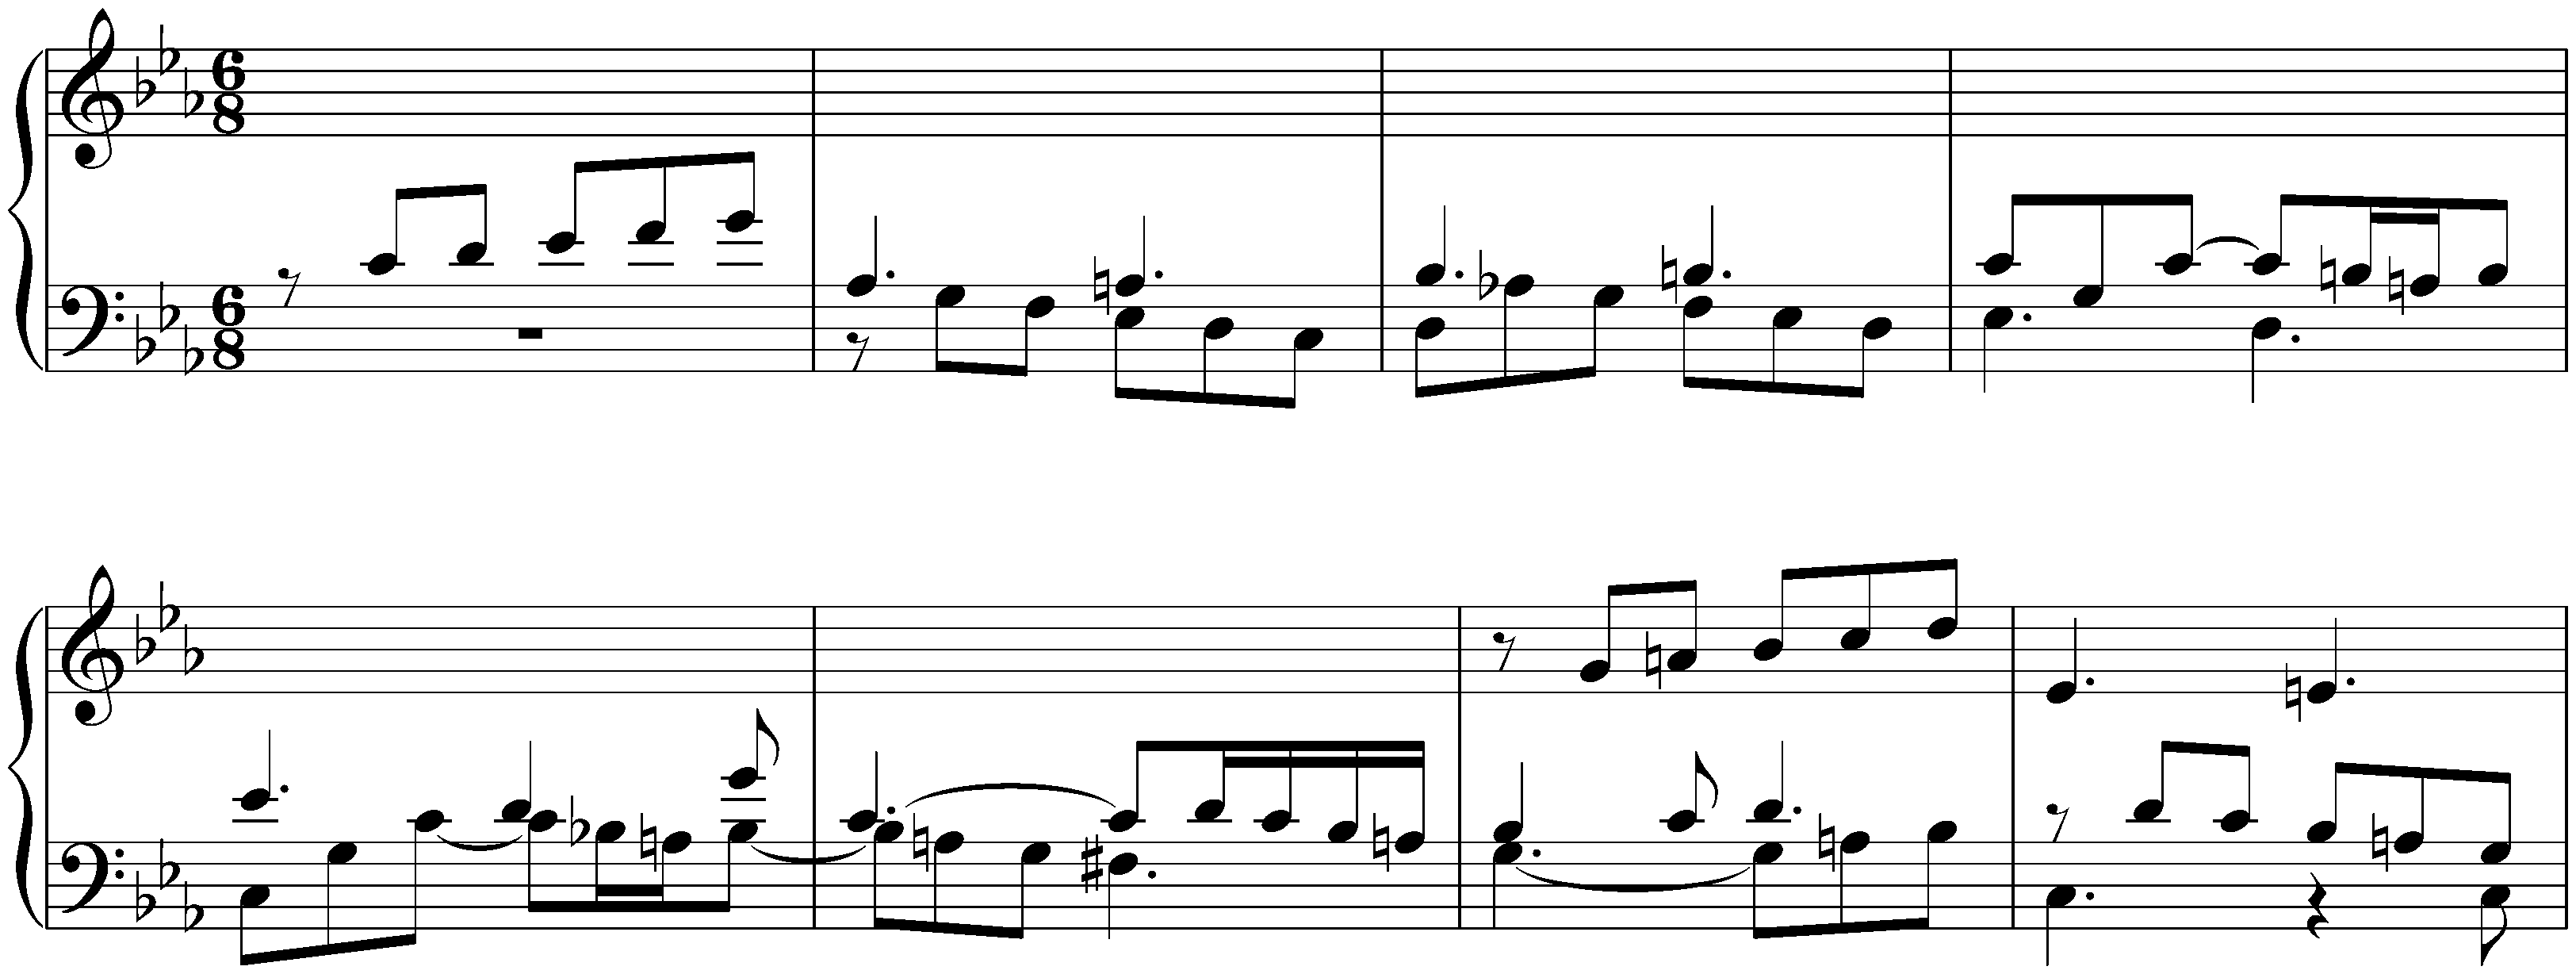 Suite in C minor, BWV 997; 2. Fuga